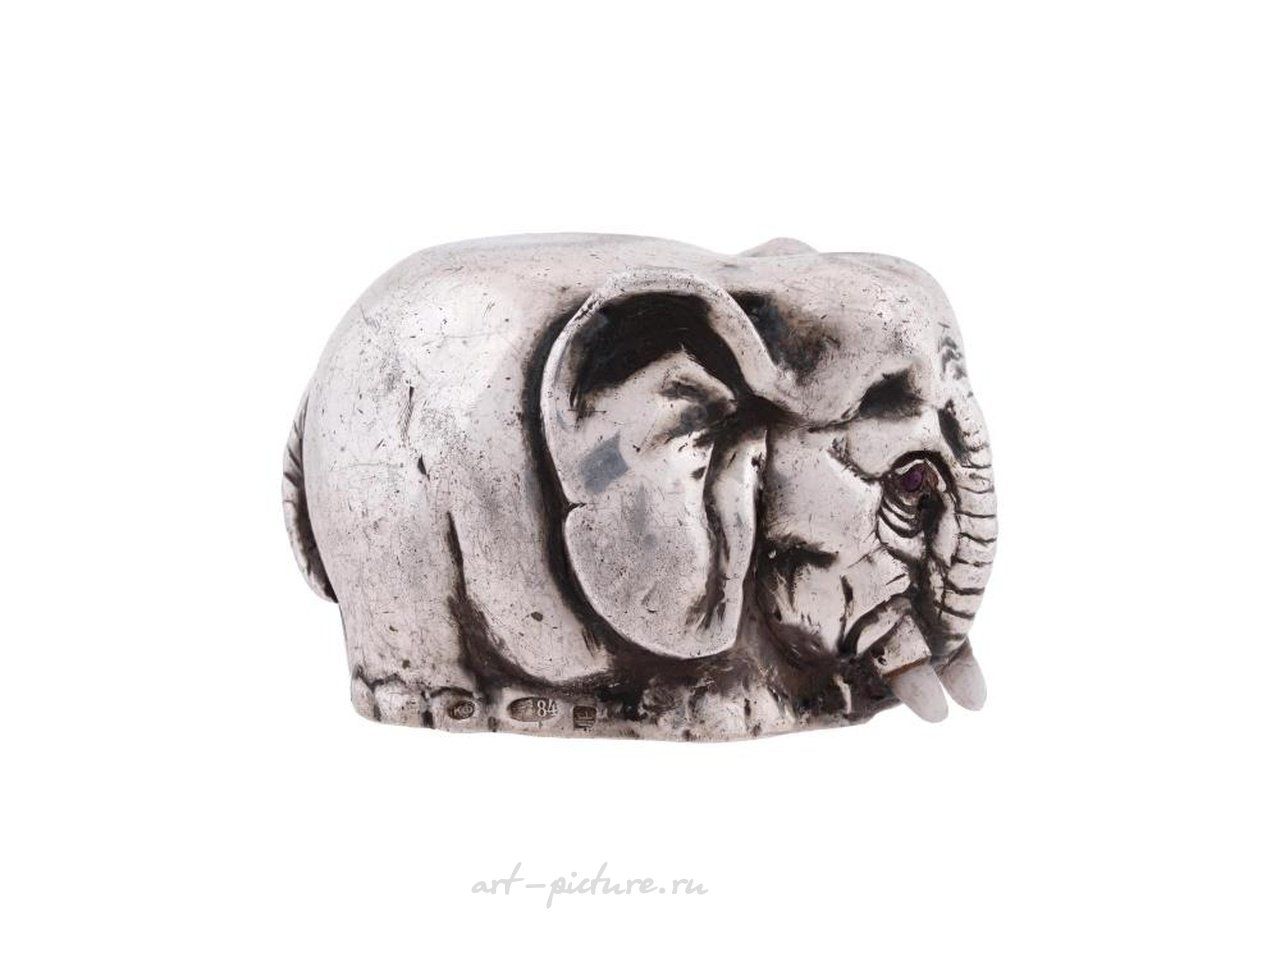 Русское серебро , Фигурная чашечка для стремени из русского серебра, изображающая слона.